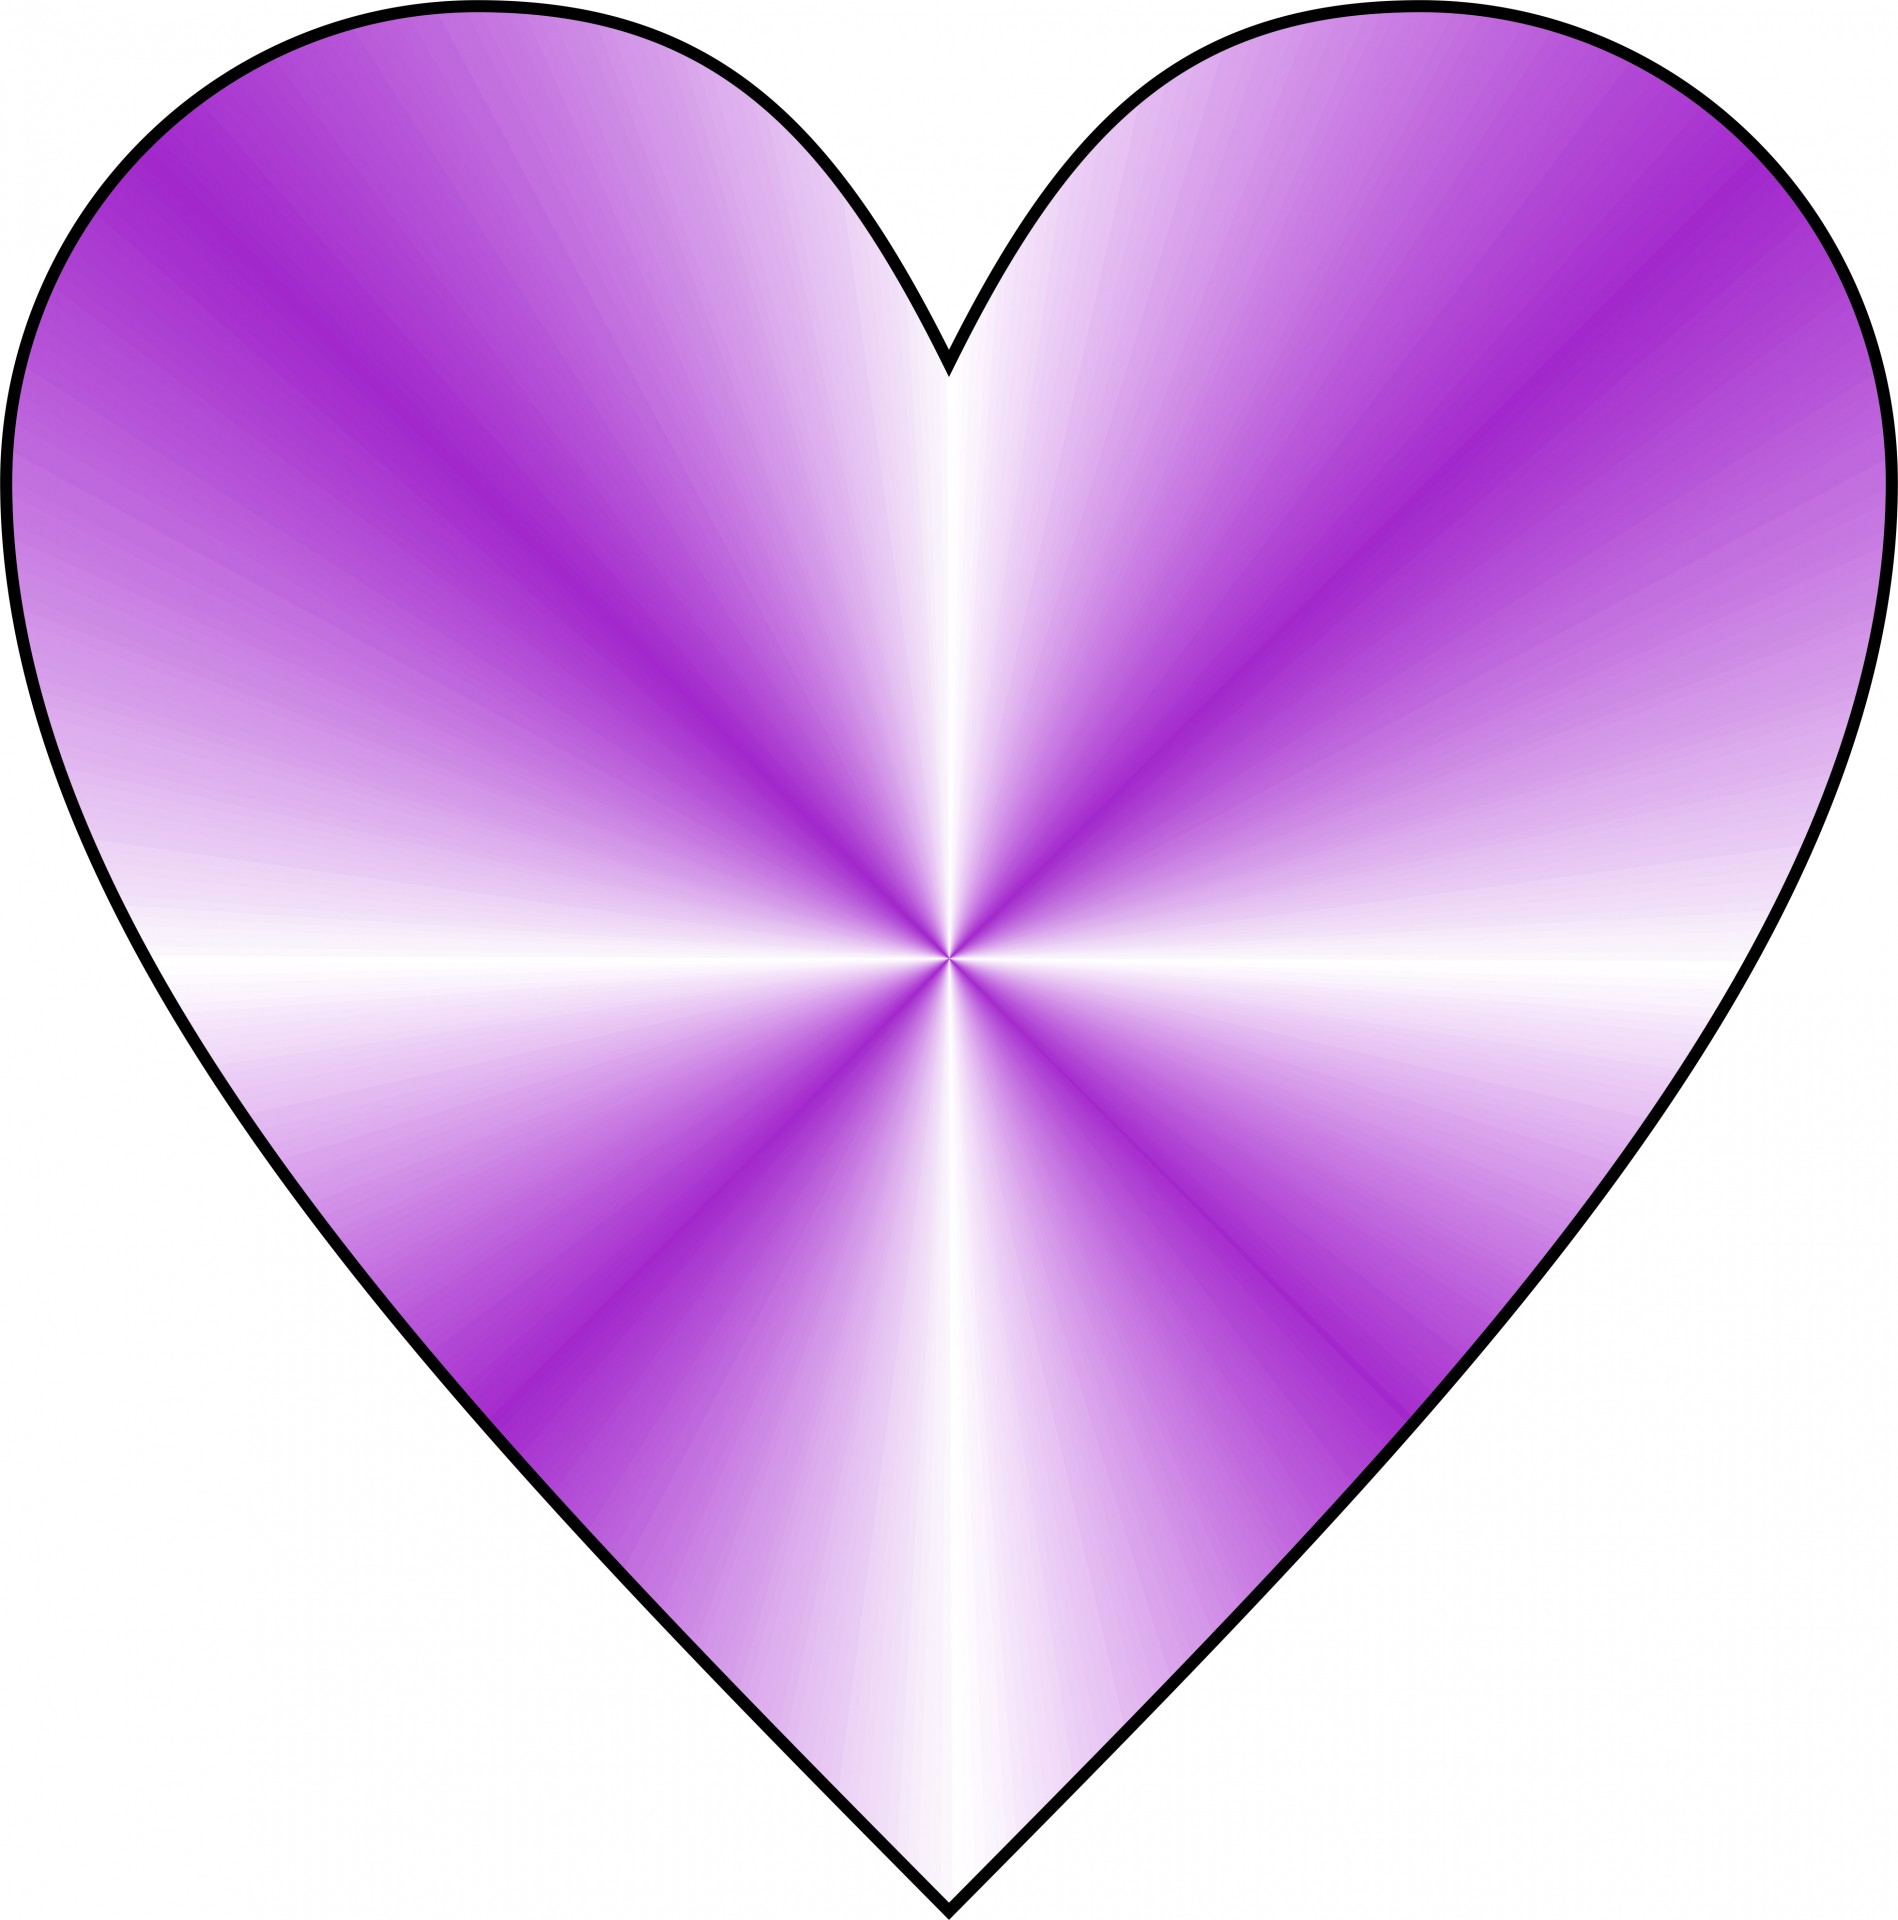 Purple Heart 2